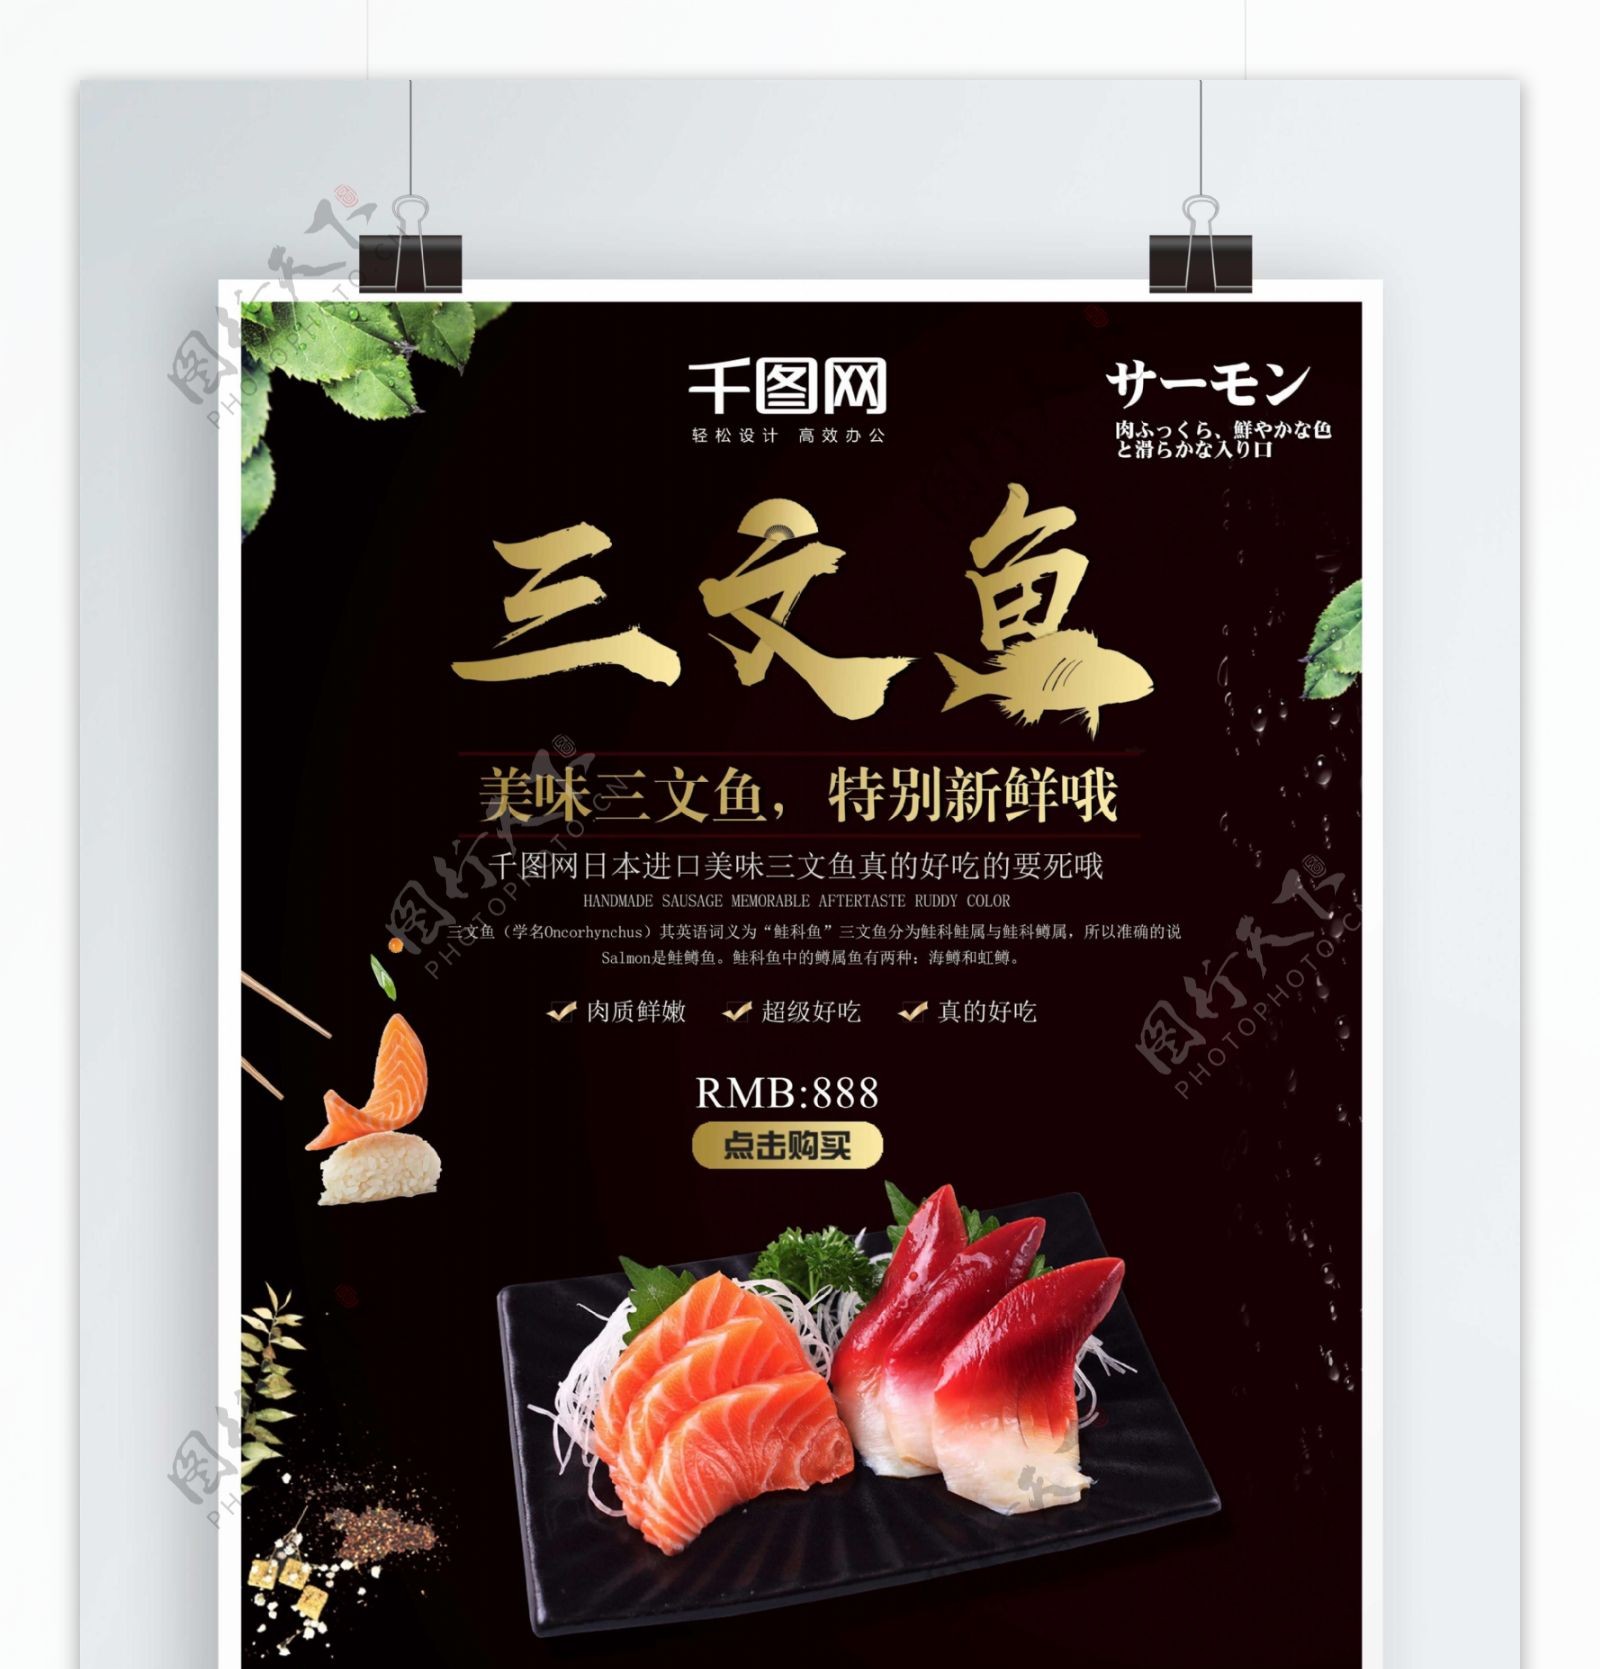 三文鱼日式料理店宣传日韩料理美食海报